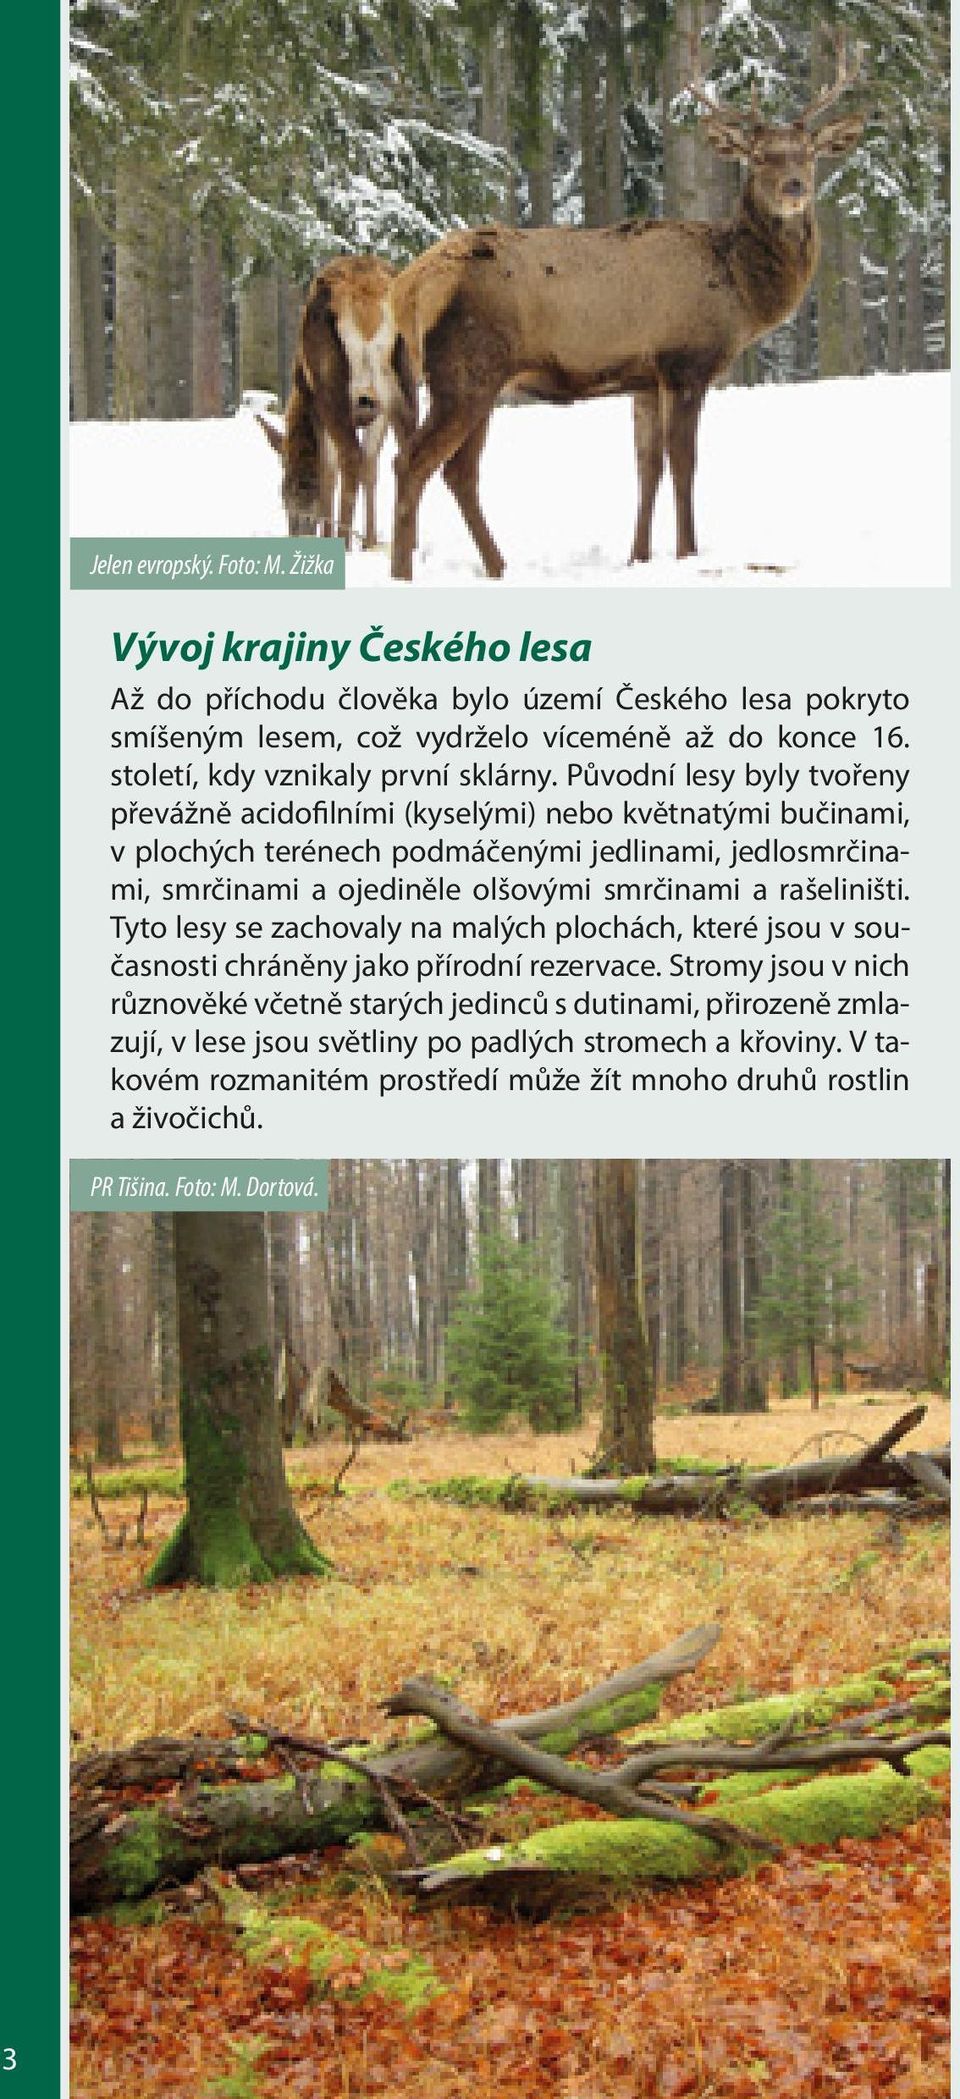 Původní lesy byly tvořeny převážně acidofilními (kyselými) nebo květnatými bučinami, v plochých terénech podmáčenými jedlinami, jedlosmrčinami, smrčinami a ojediněle olšovými smrčinami a